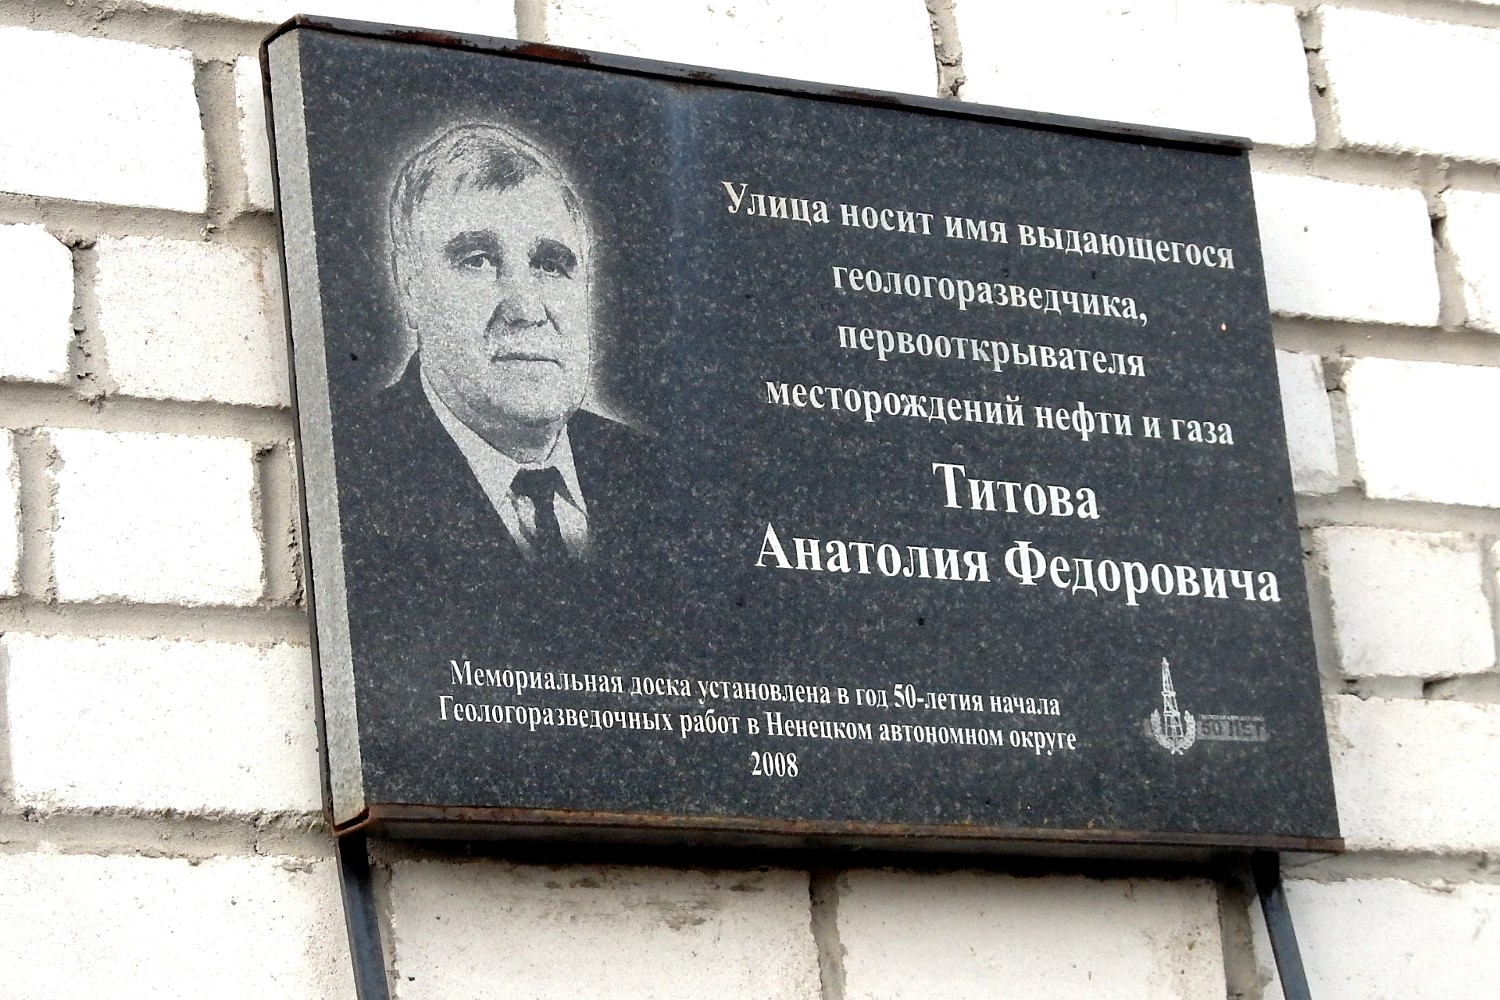 Naryan-Mar, Улица Титова, 3. Naryan-Mar — Memorial plaques